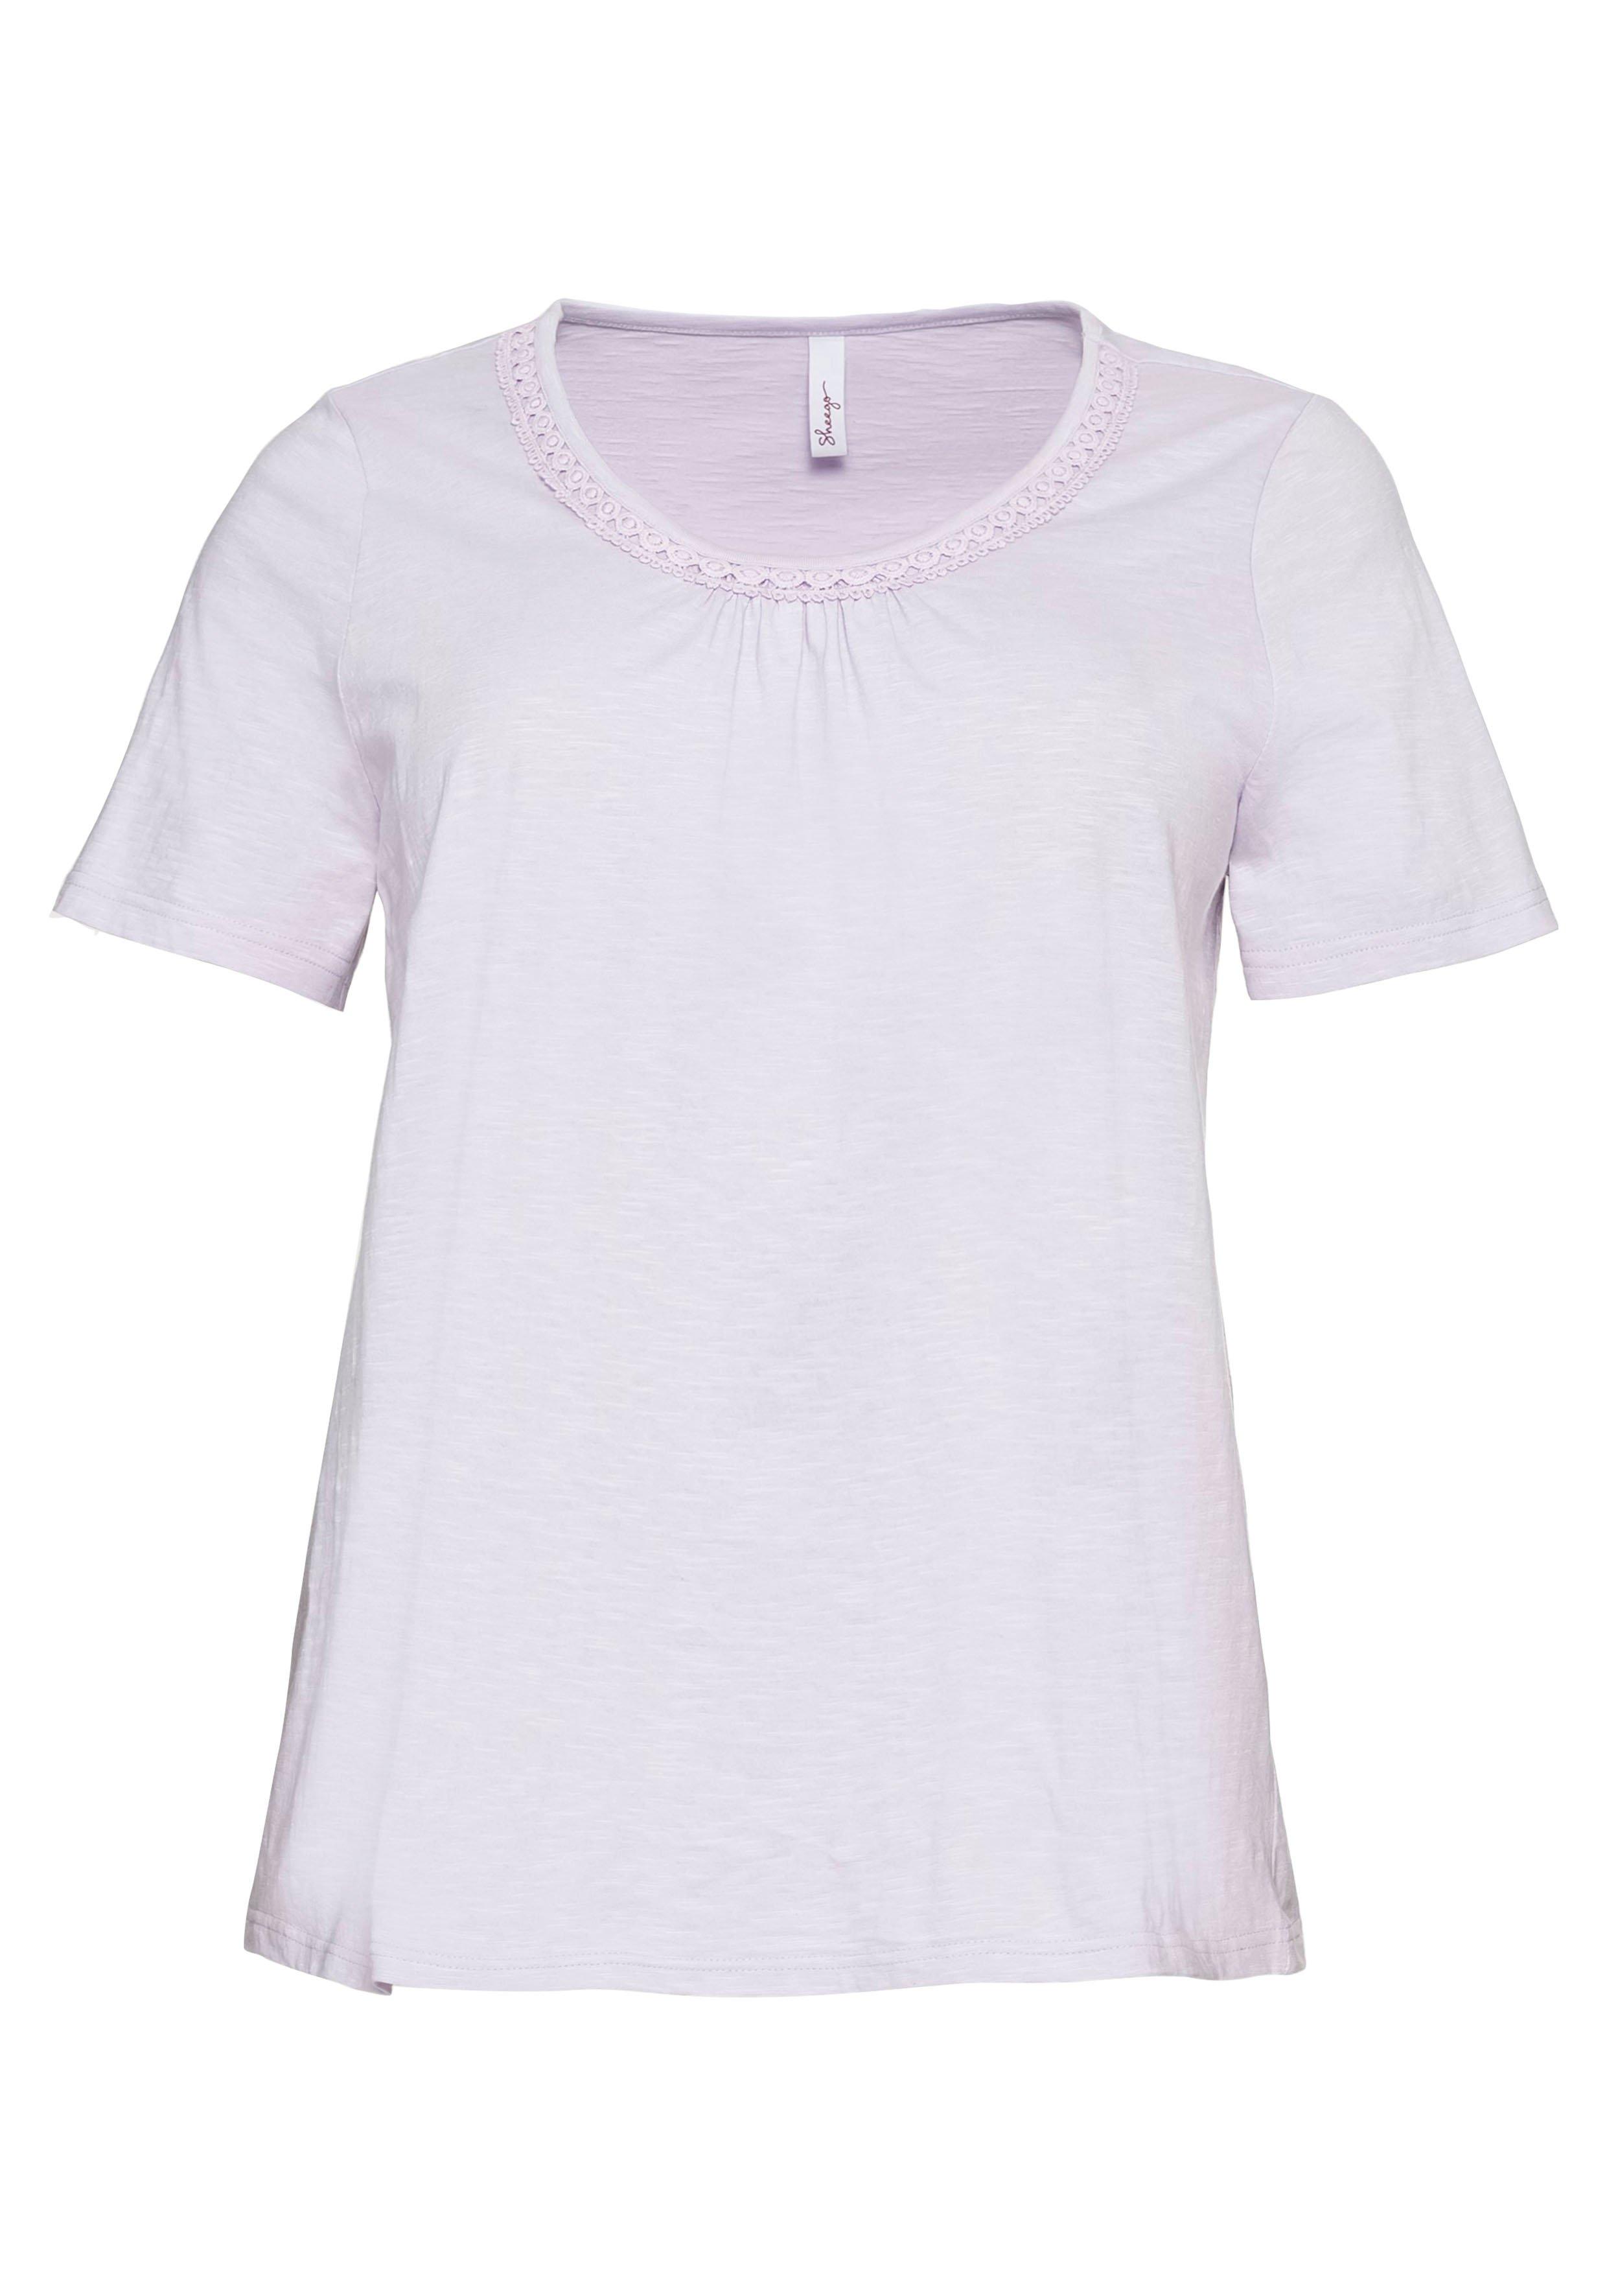 T-Shirt mit Spitze an Ärmeln und Schulternaht - sheego lavendel 